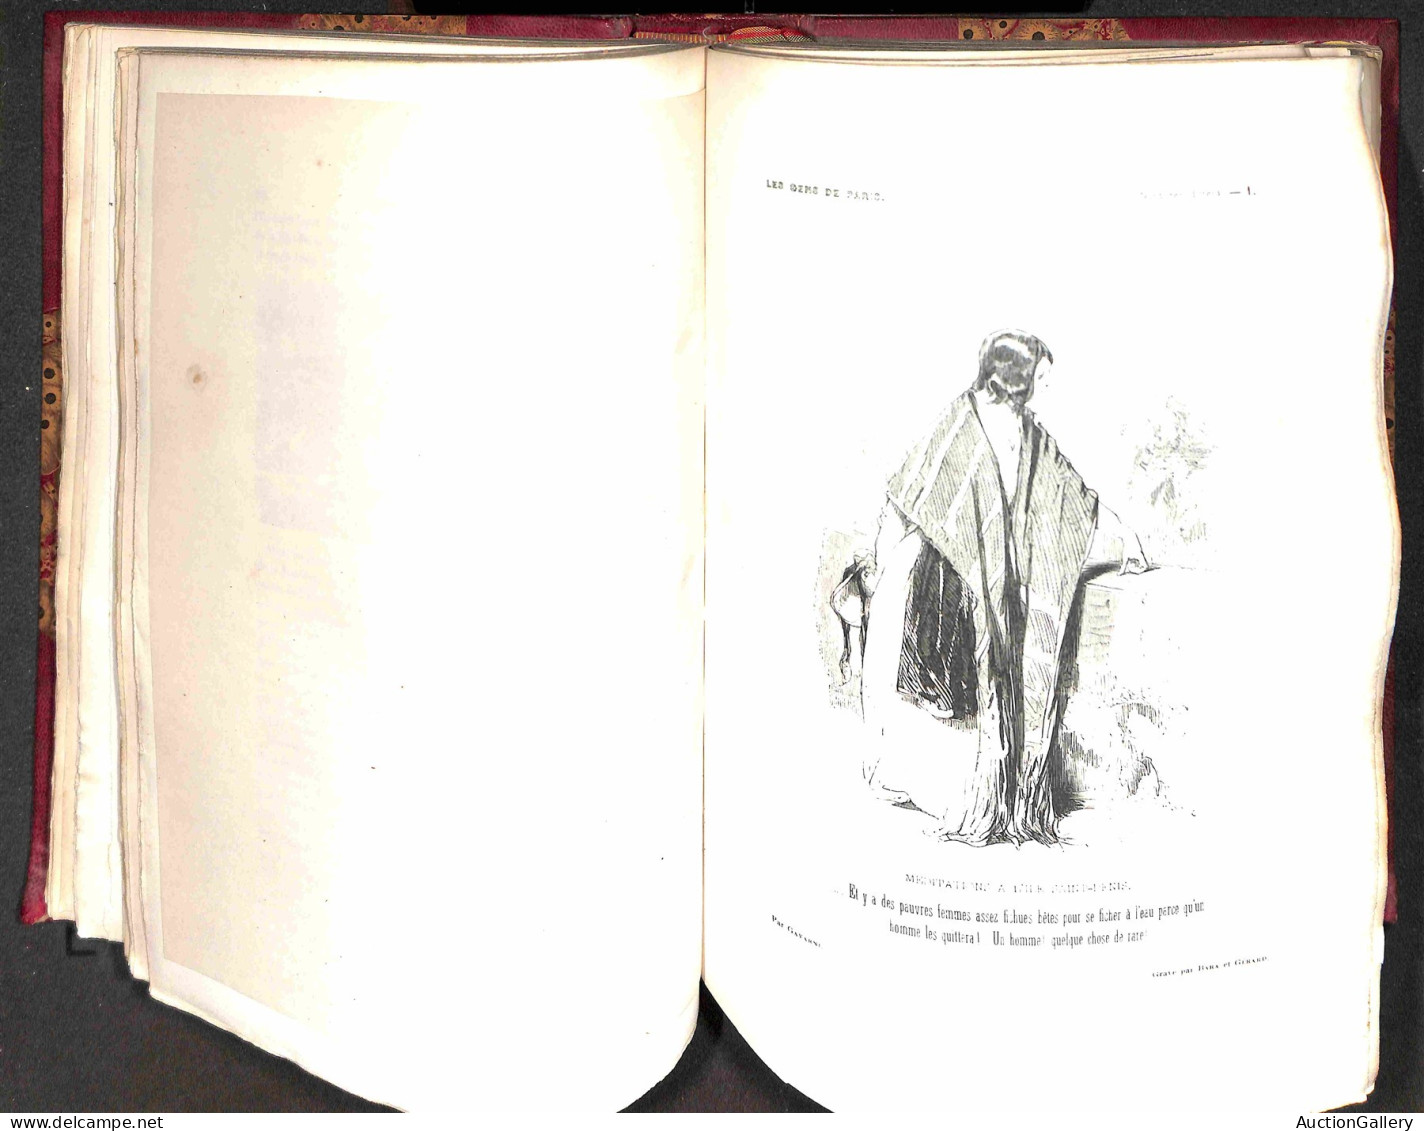 Europa - Francia - Le Diable a Paris - 1845/1846 - Tome I + Tome II - i due volumi completi rilegati all'epoca - in otti